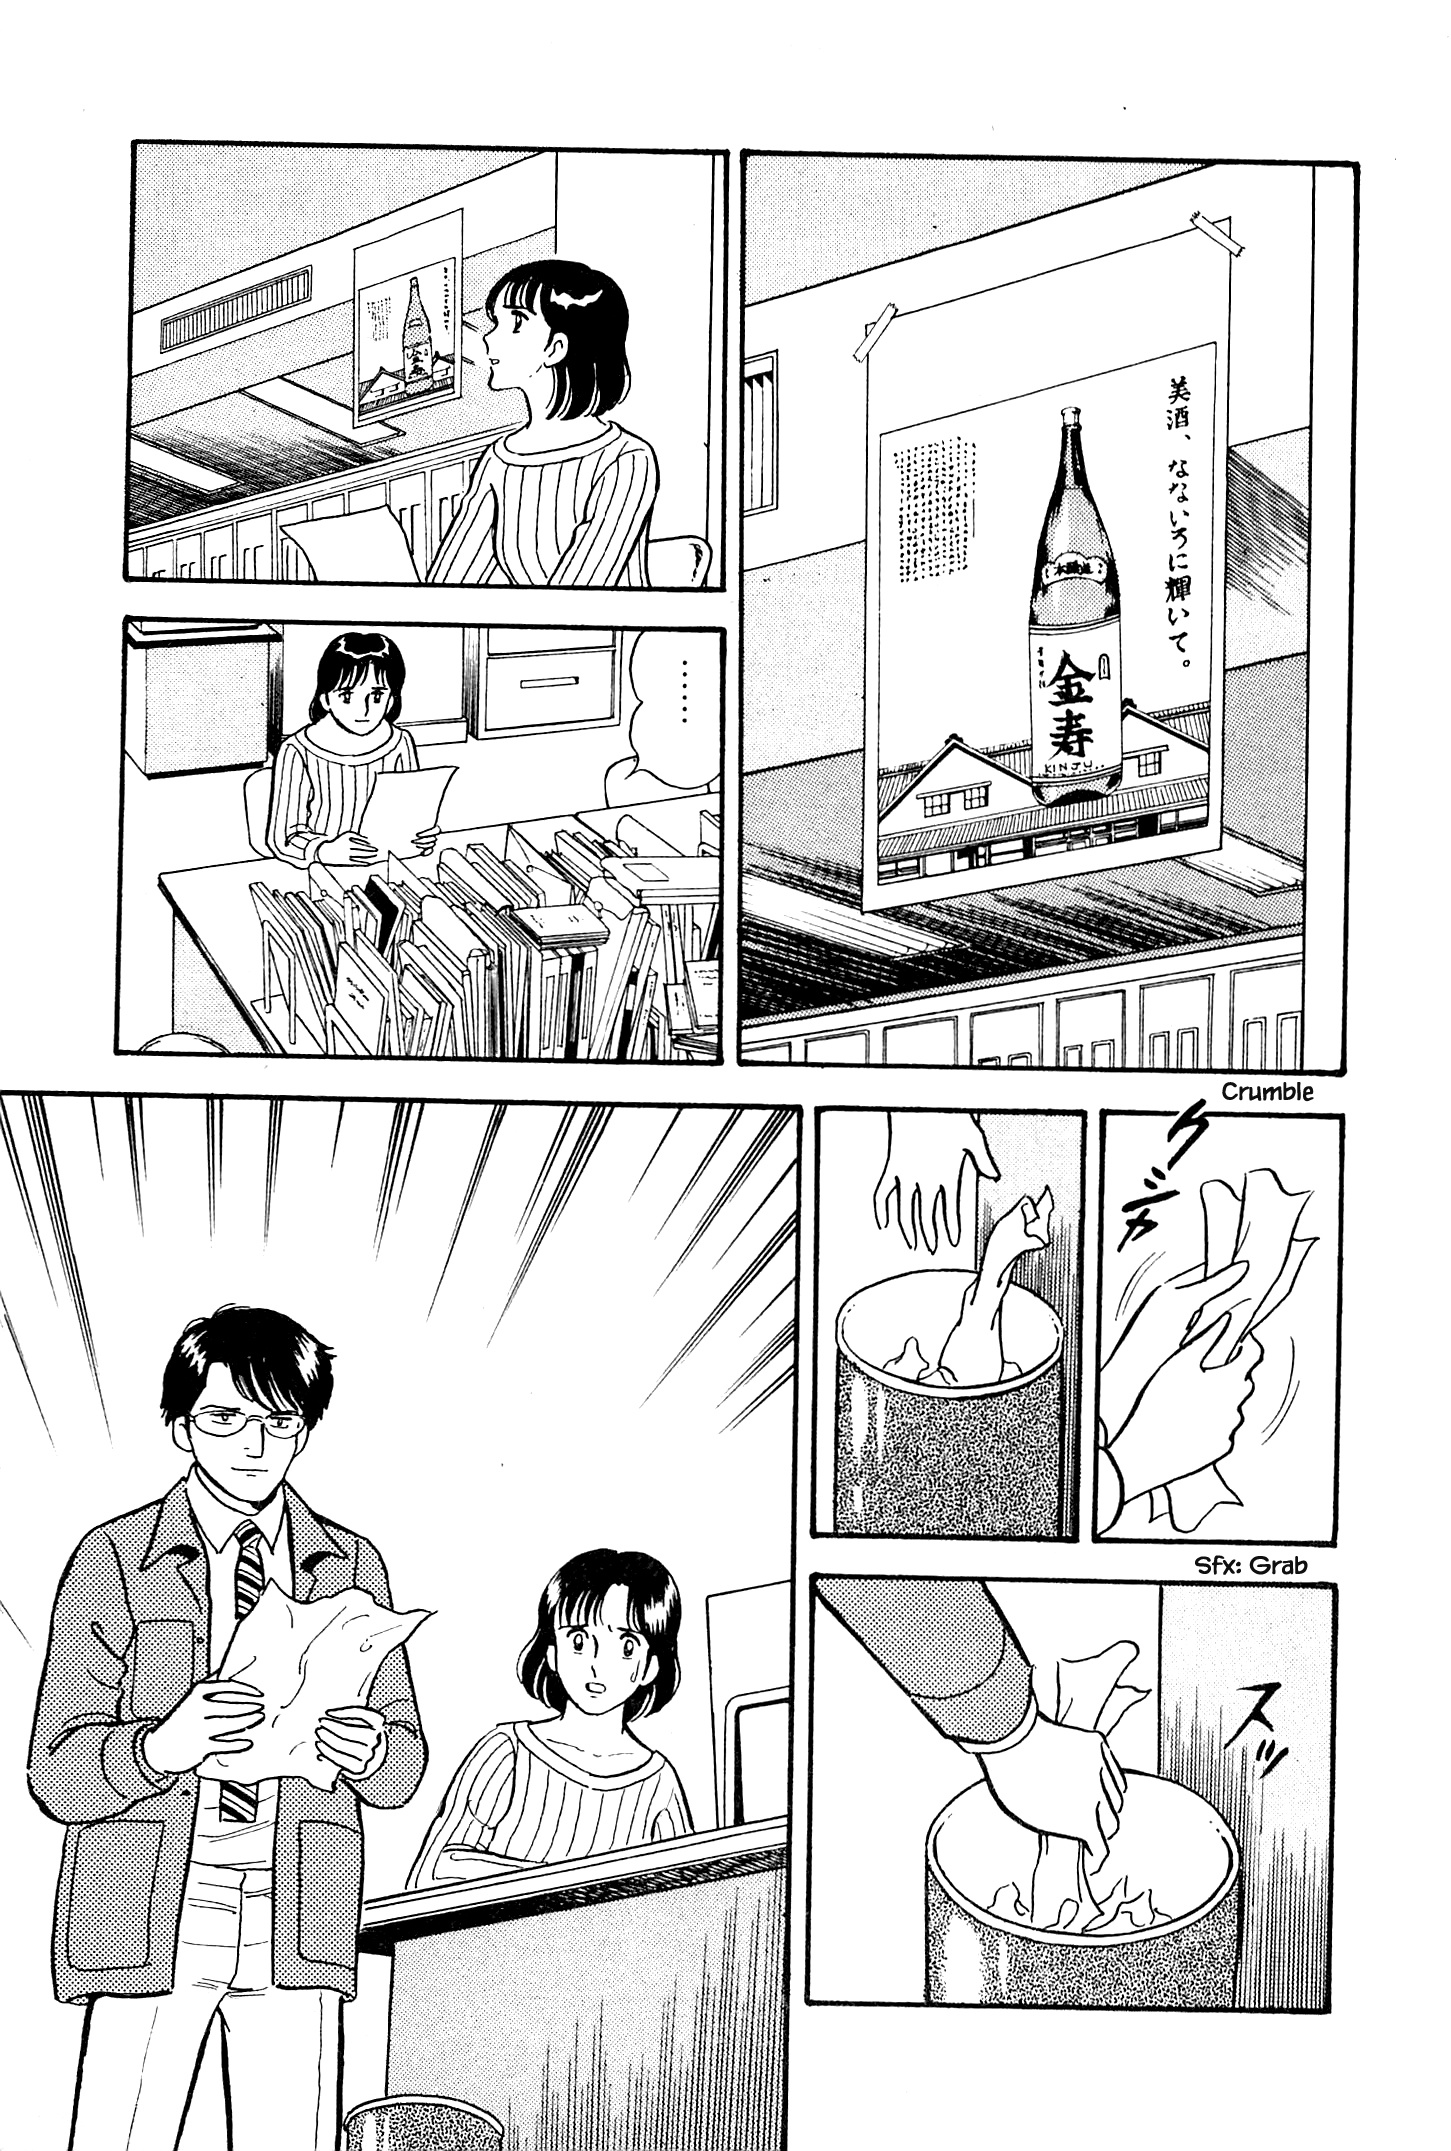 Natsuko's Sake - Page 6